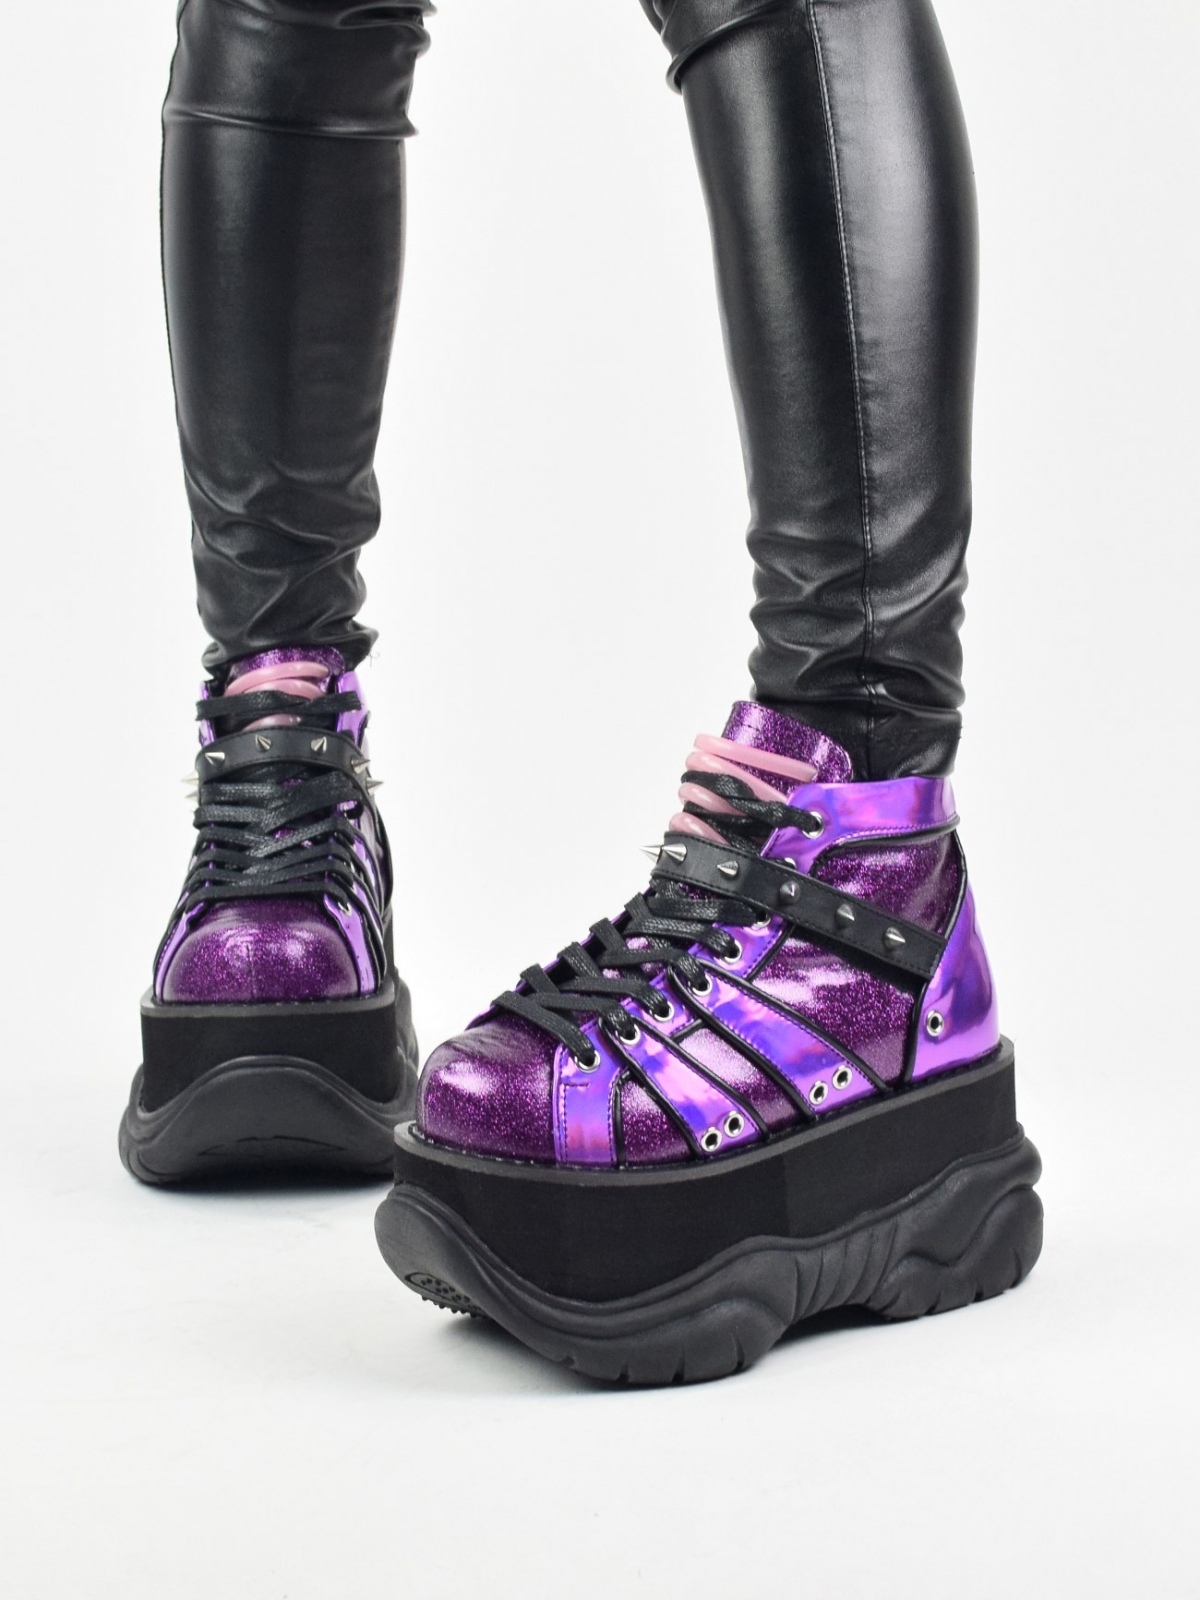 Nep 100 alternativaus dizaino violetinės spalvos batai su šviečiančiais vamzdeliais ties liežuvėliu